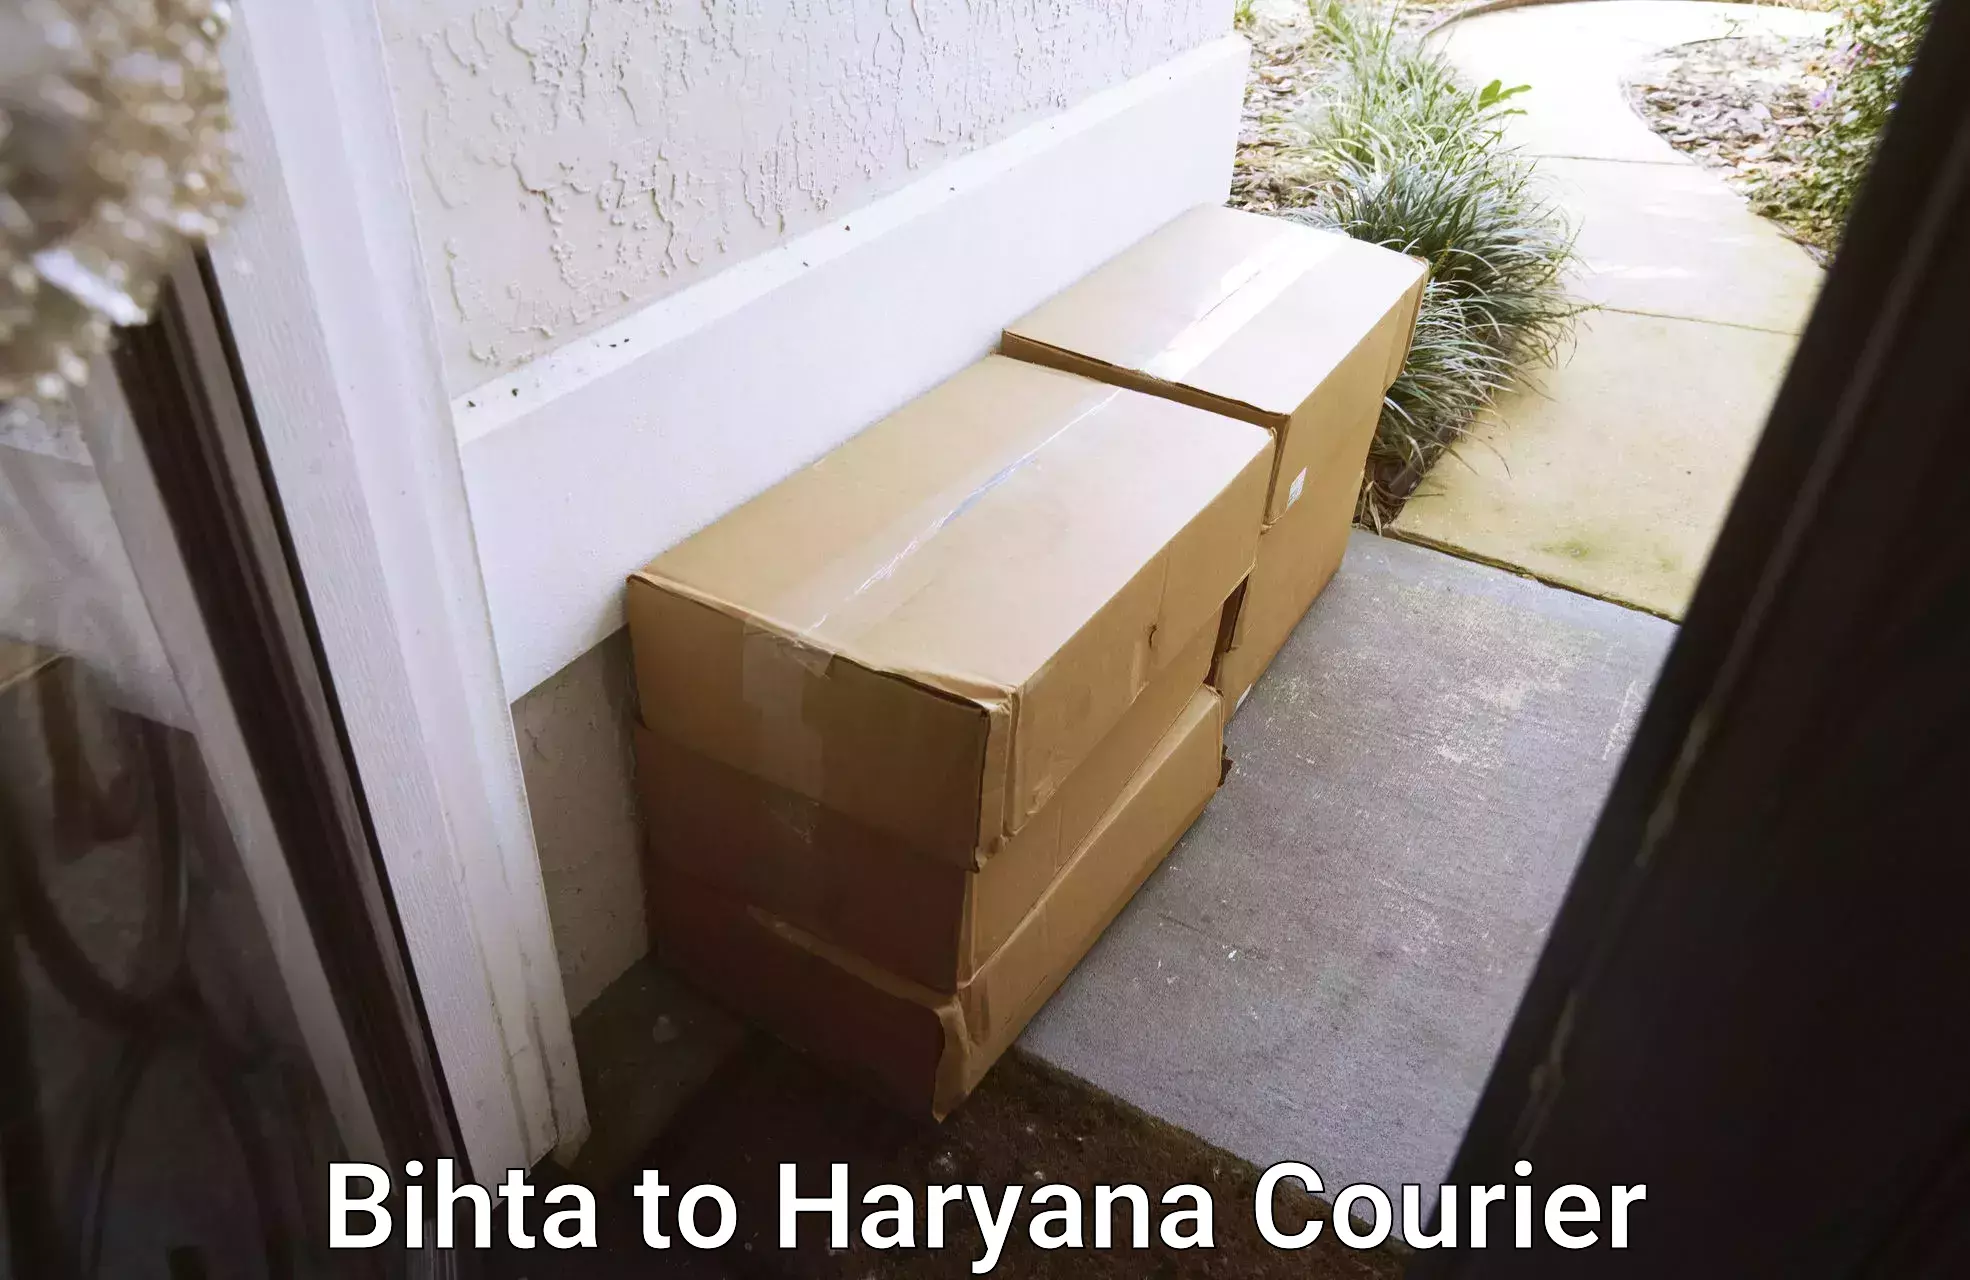 Expert goods movers Bihta to Gurgaon